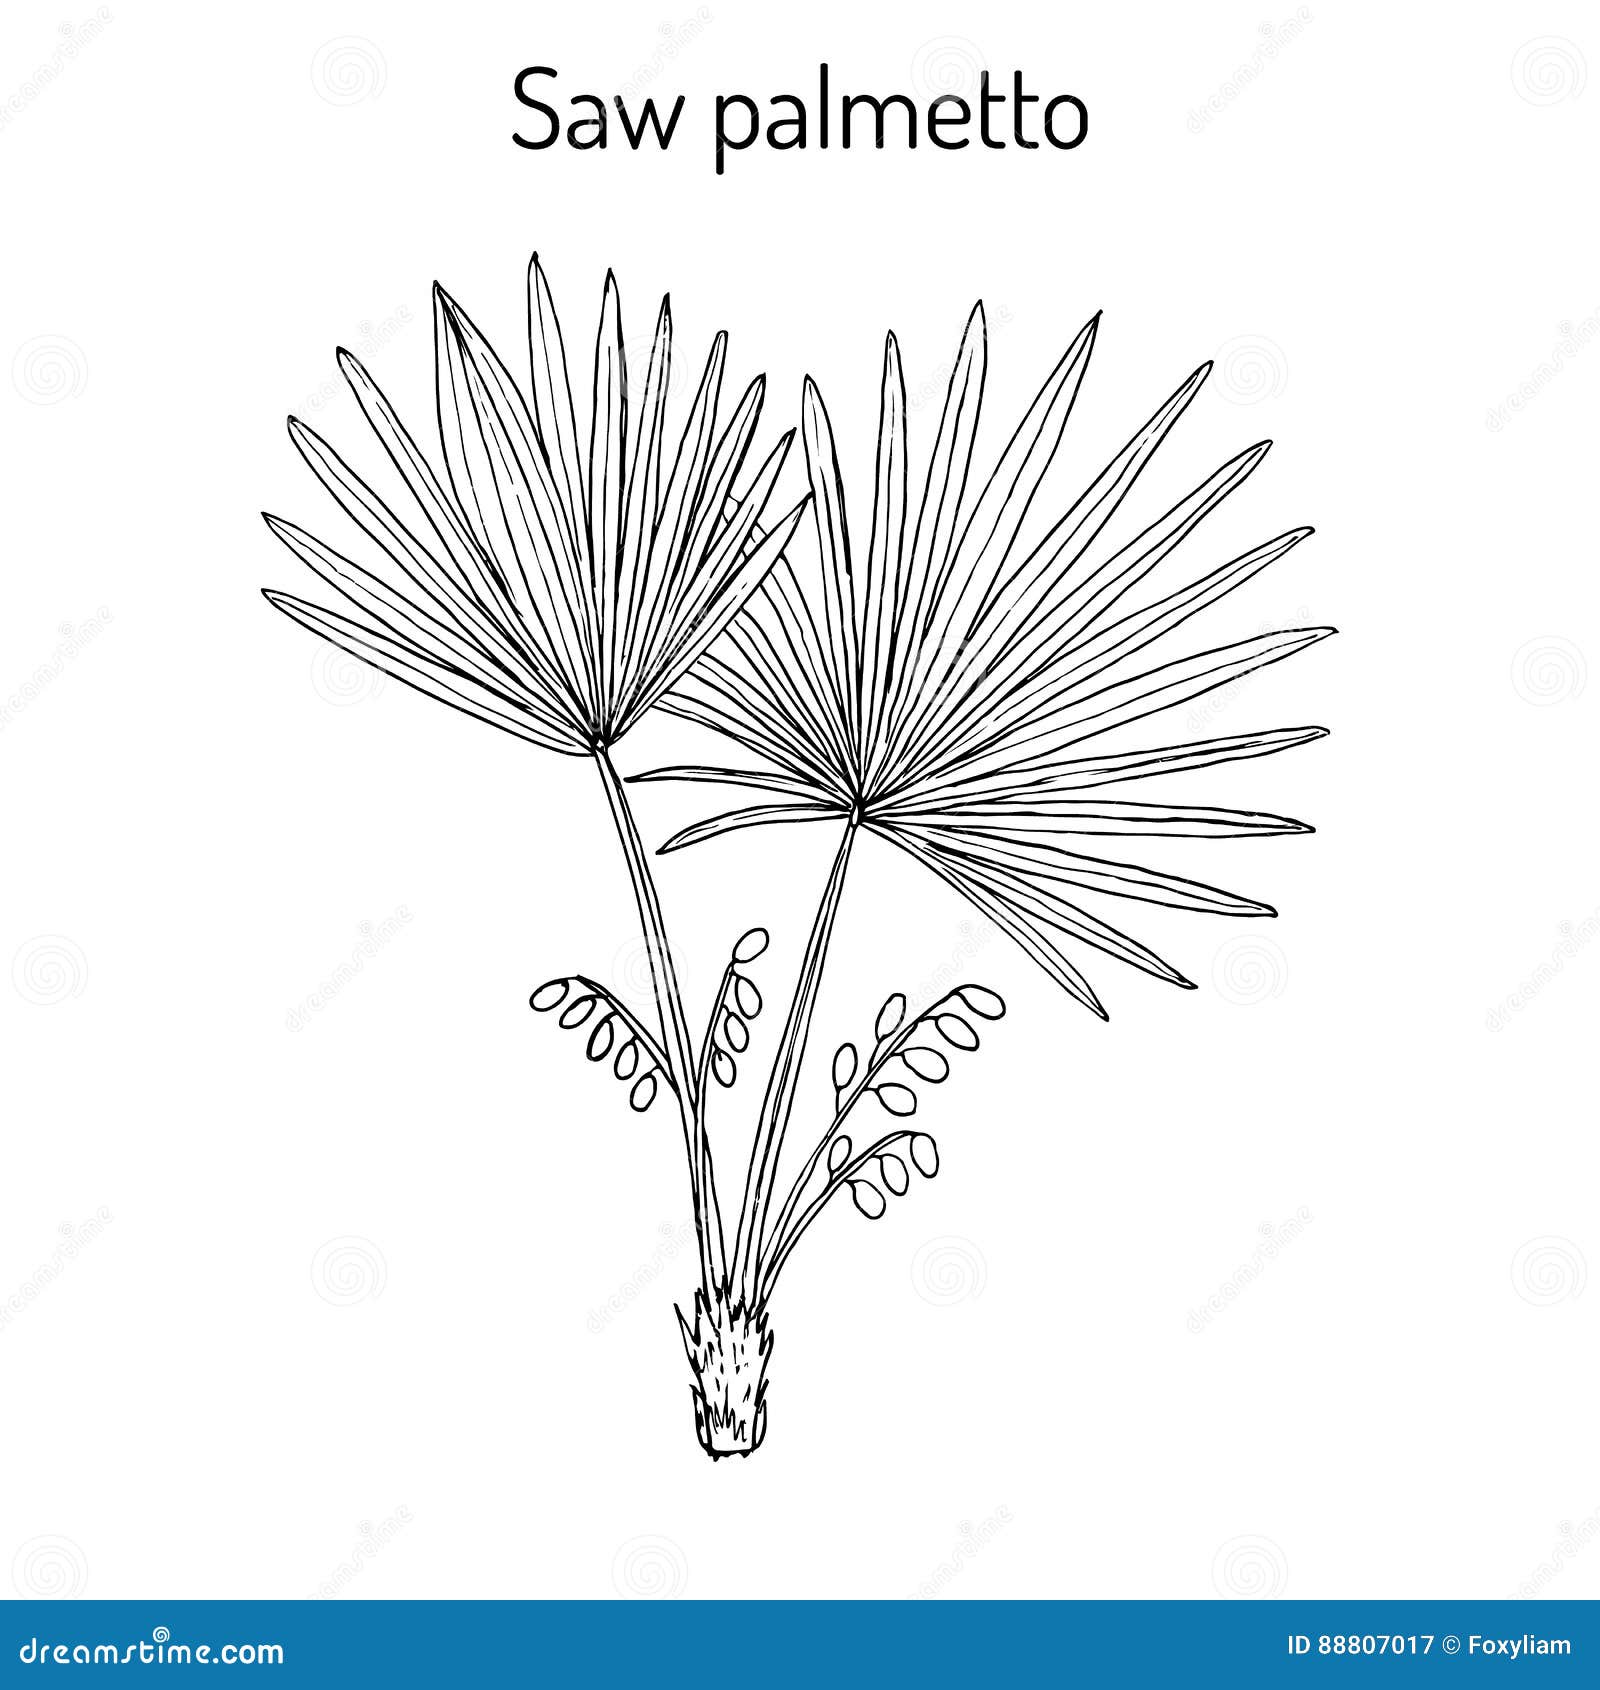 saw palmetto serenoa repens , medicinal tree